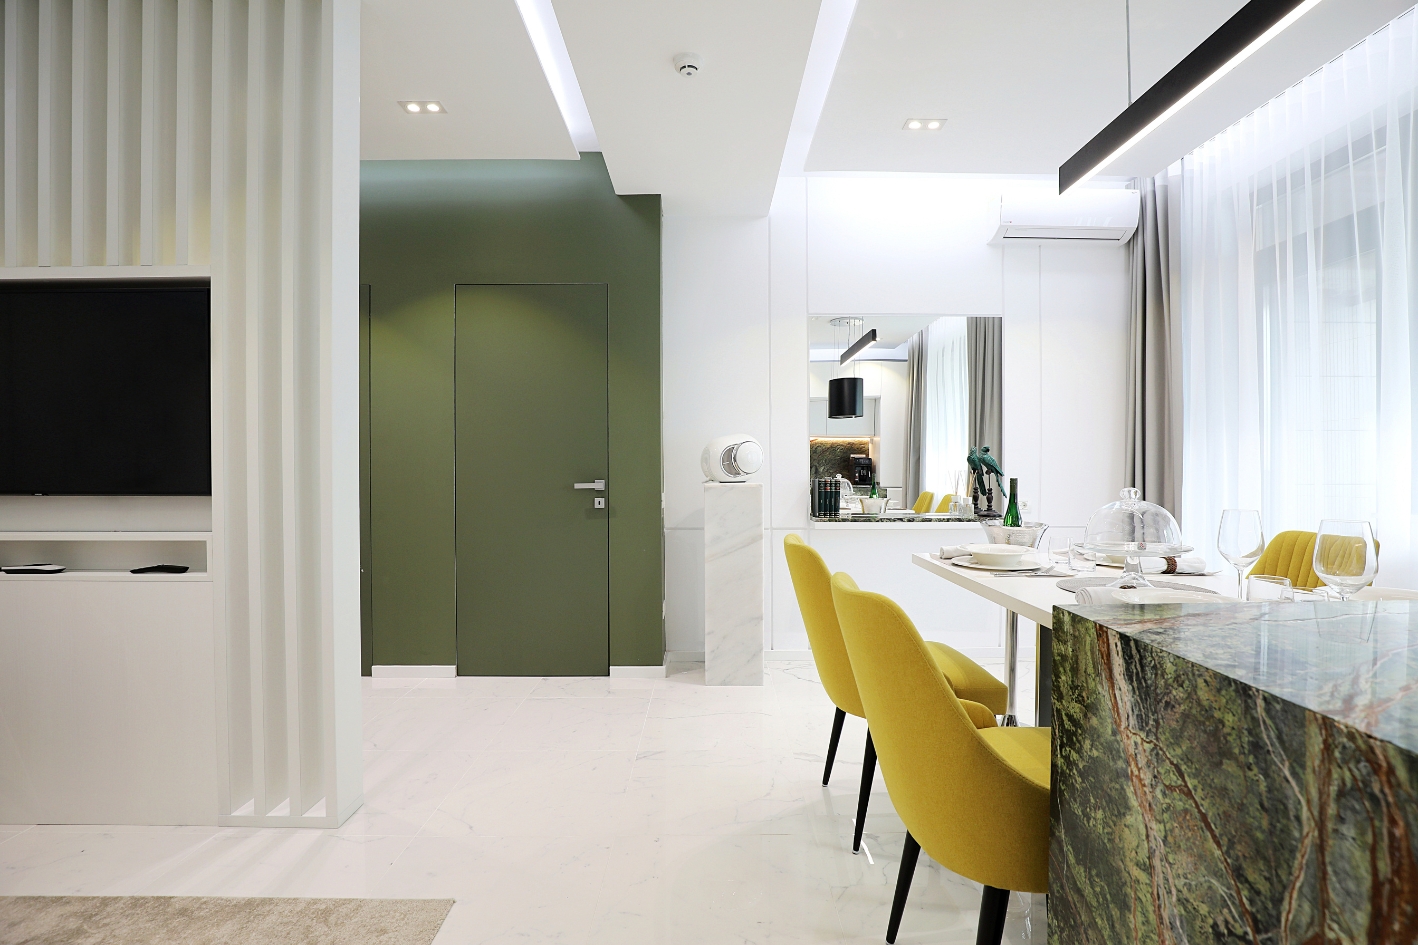 Intrare apartament modern amenajat in stil minimalist cu o plaeta vie de culori si marmura.